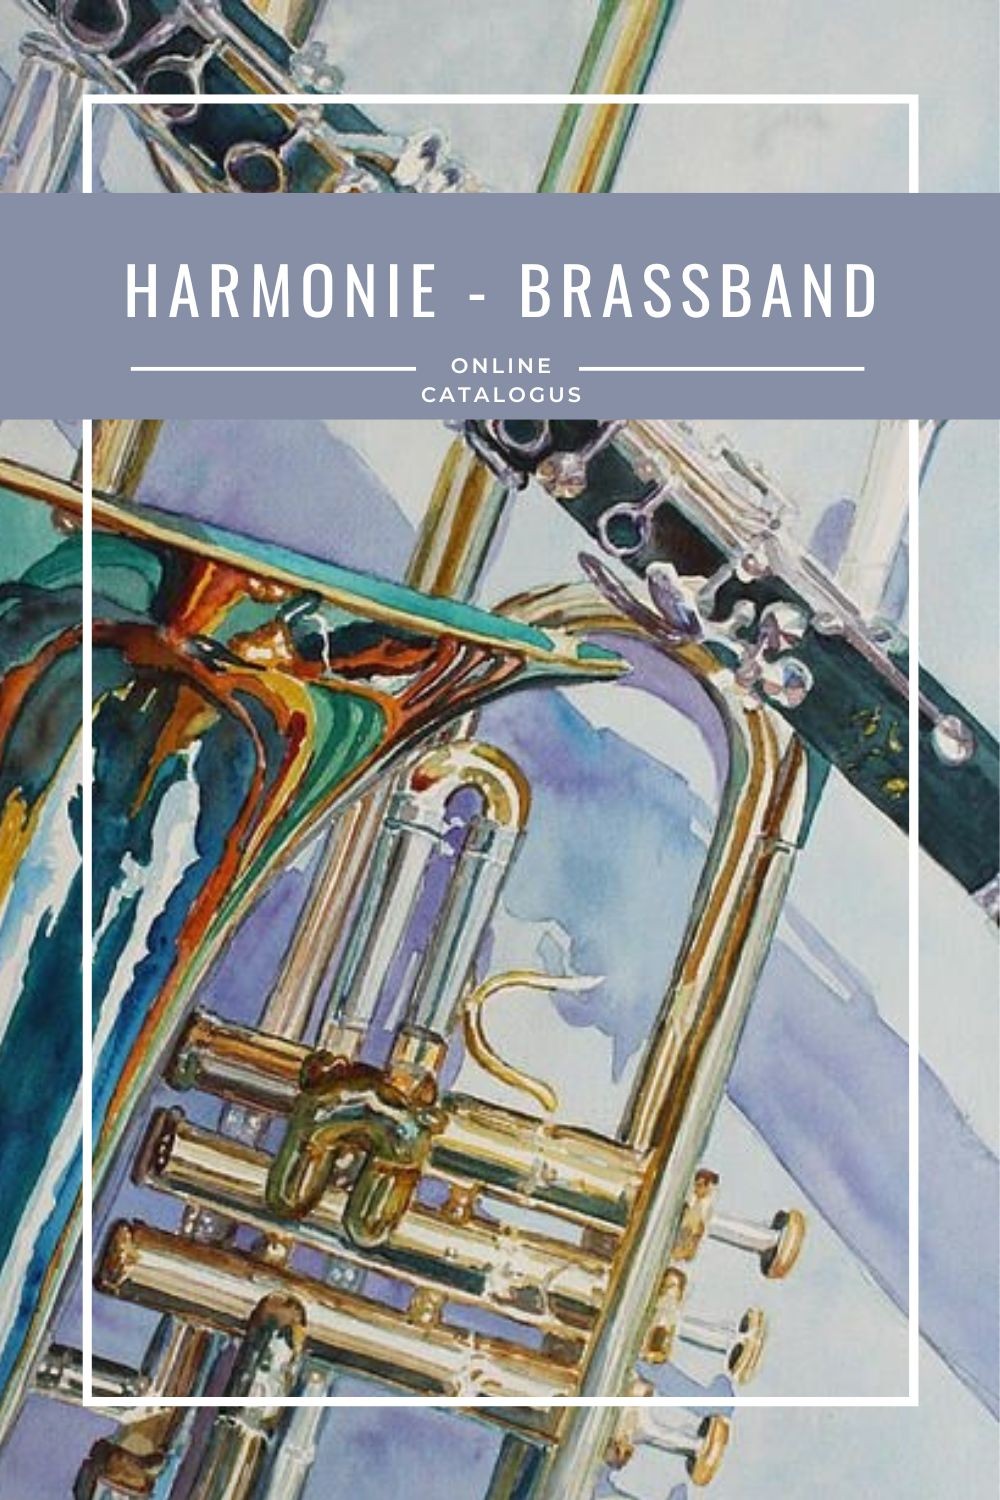 Harmonie - Brassband online catalogus